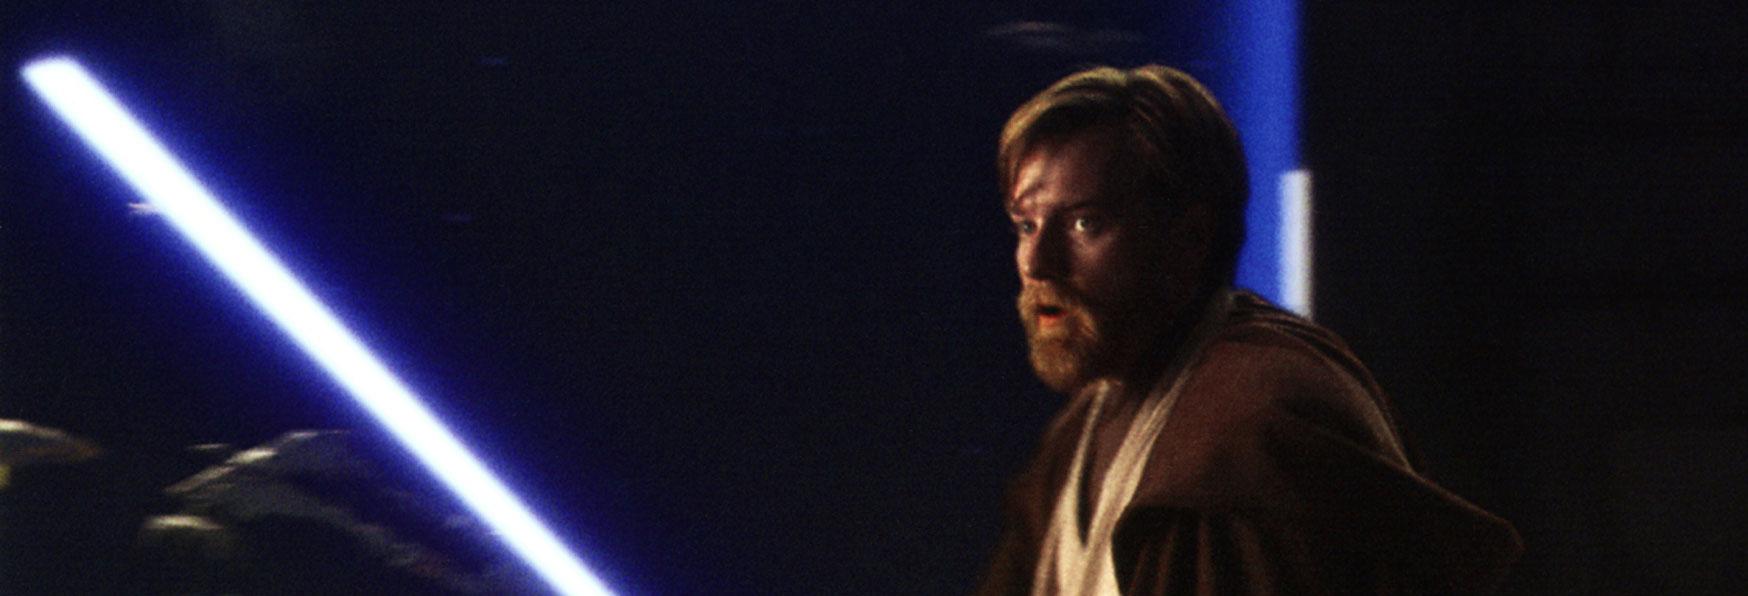 Ewan McGregor conferma il suo Ritorno come Obi-Wan Kenoby per una Serie Disney 